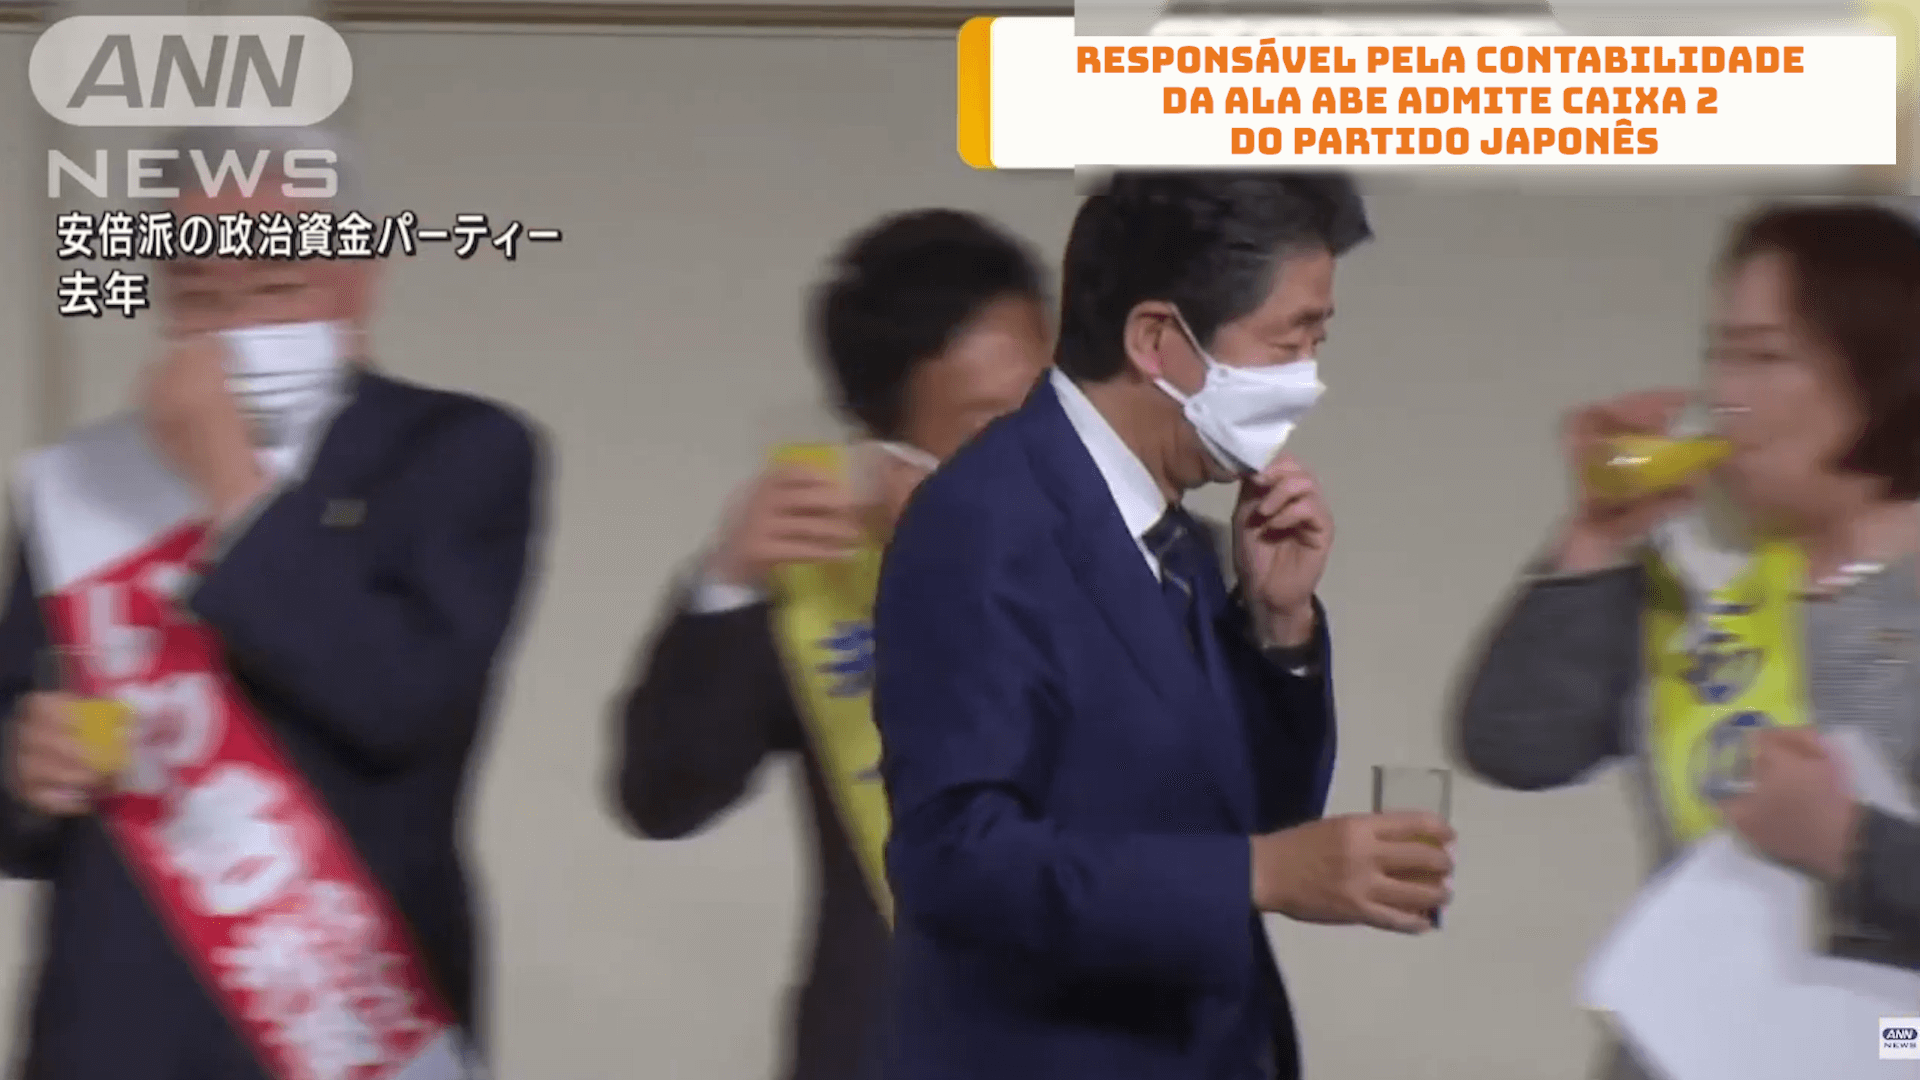 Responsável pela contabilidade da Ala Abe admite caixa 2 do Partido japonês